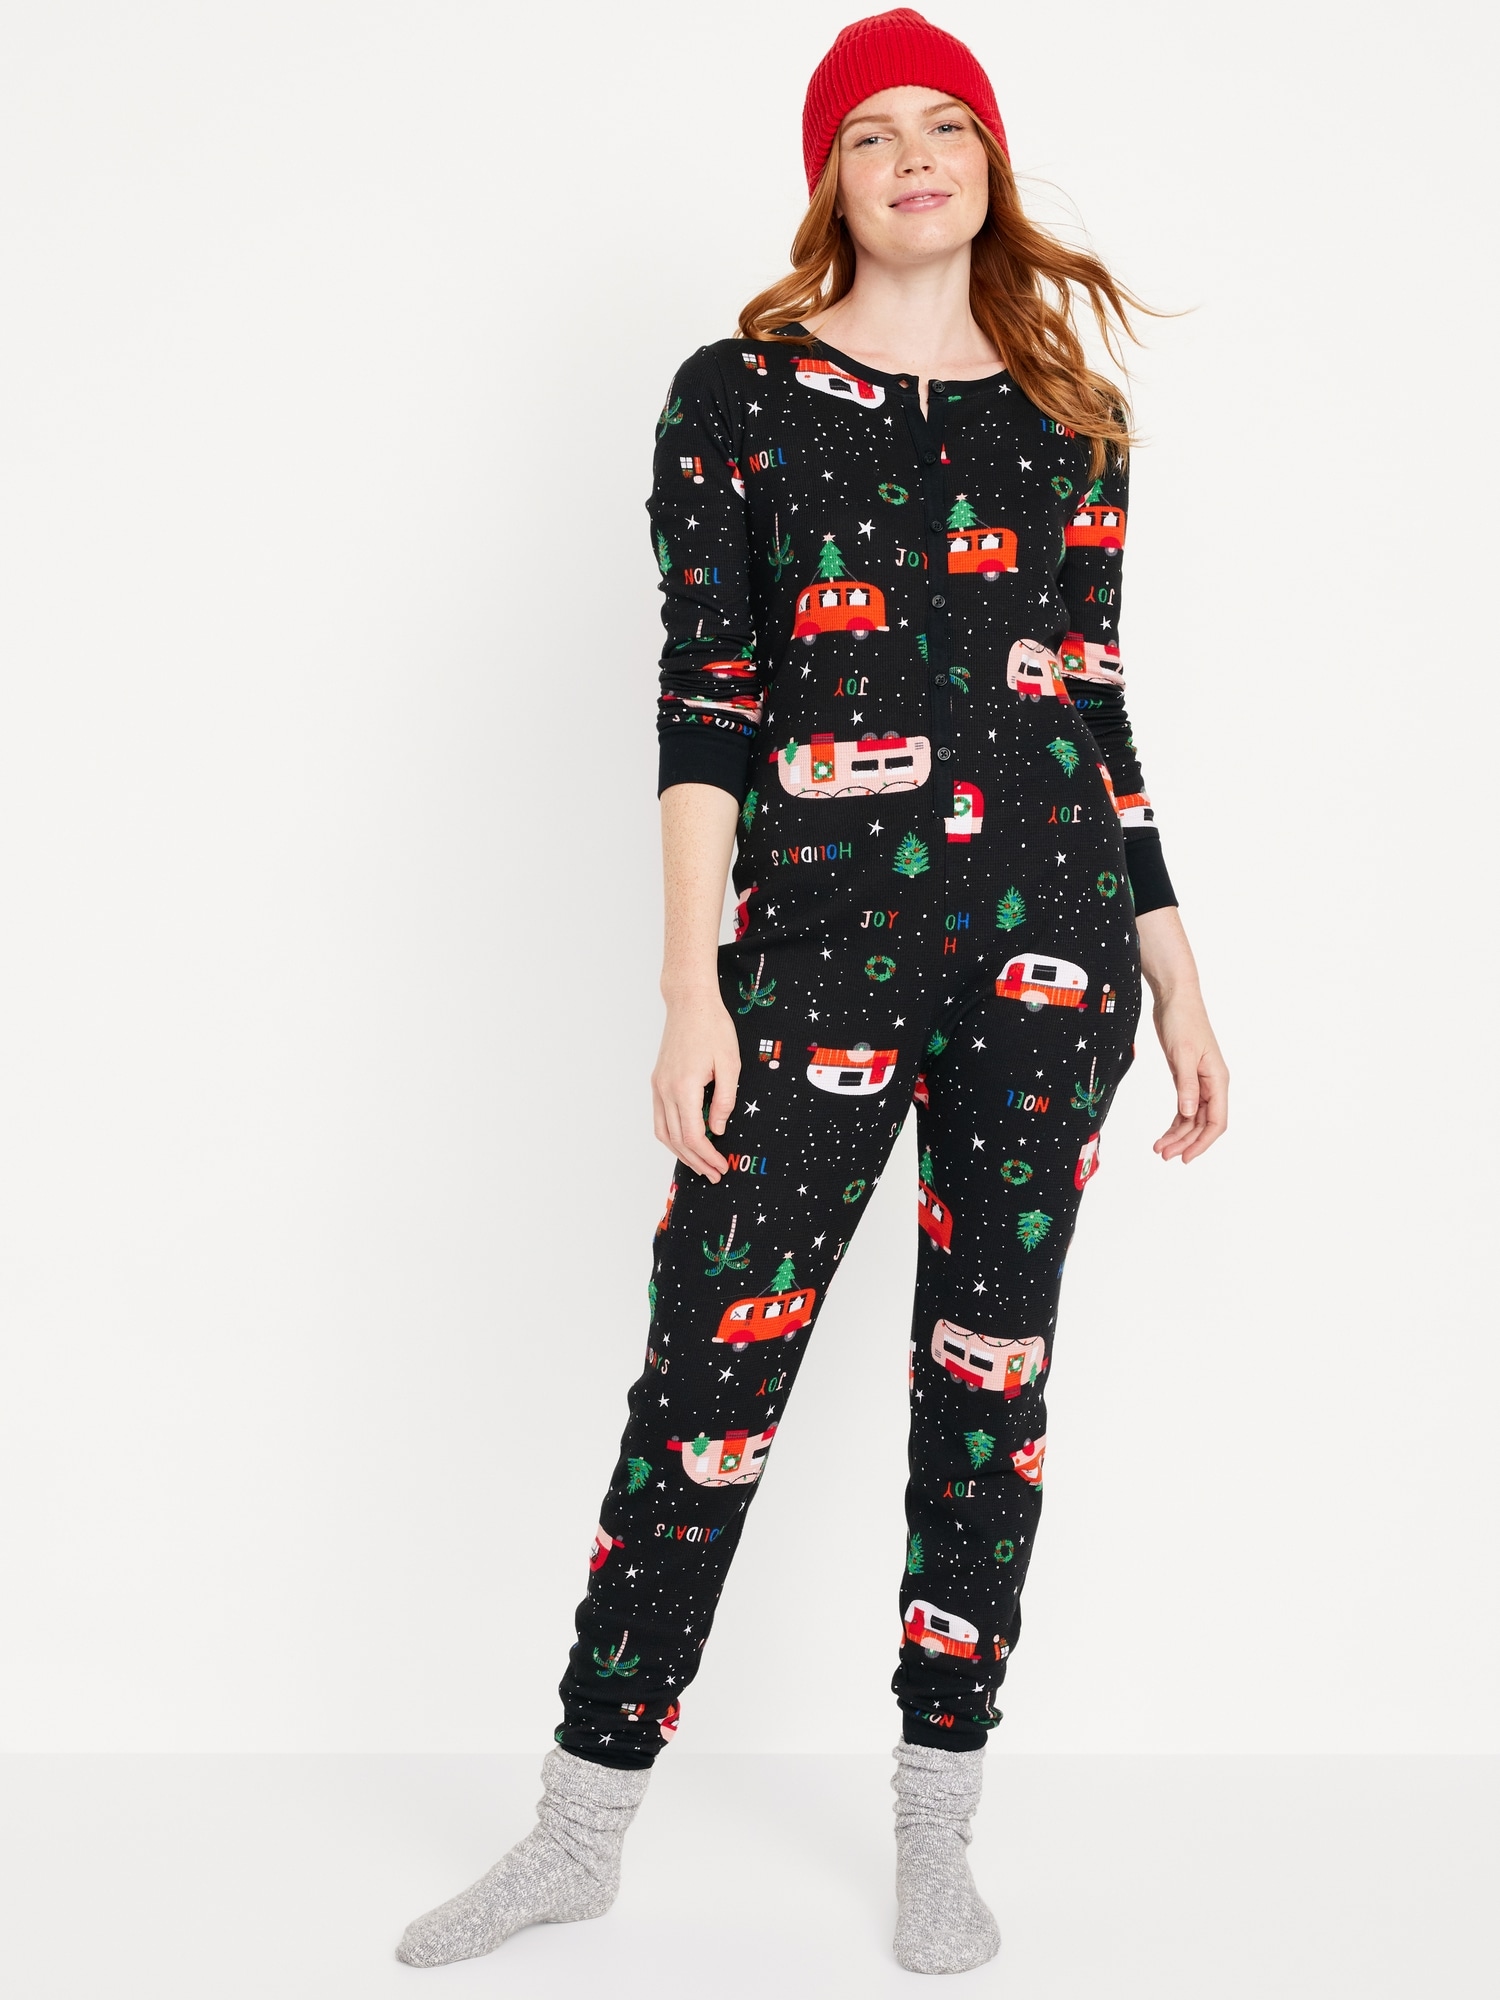 Cozy Christmas Pajamas, women's thermal pajamas, women's black